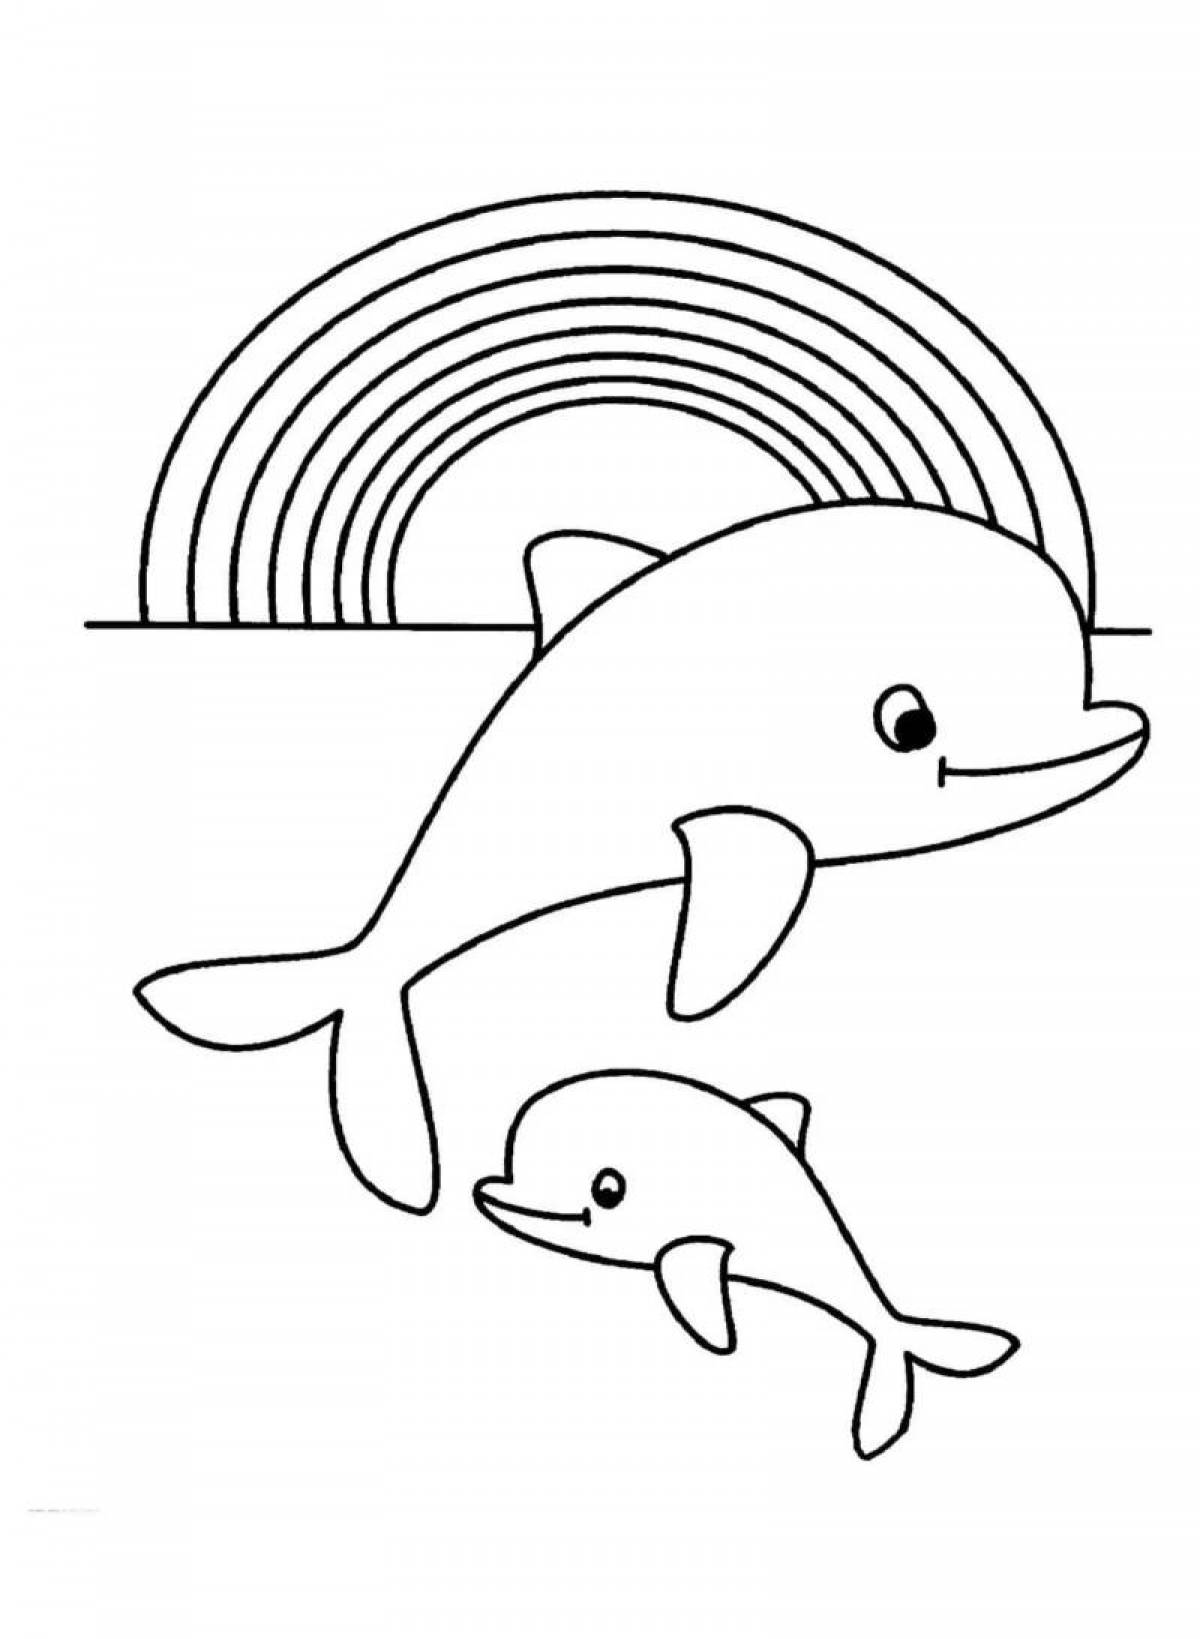 Веселая раскраска дельфинов для детей